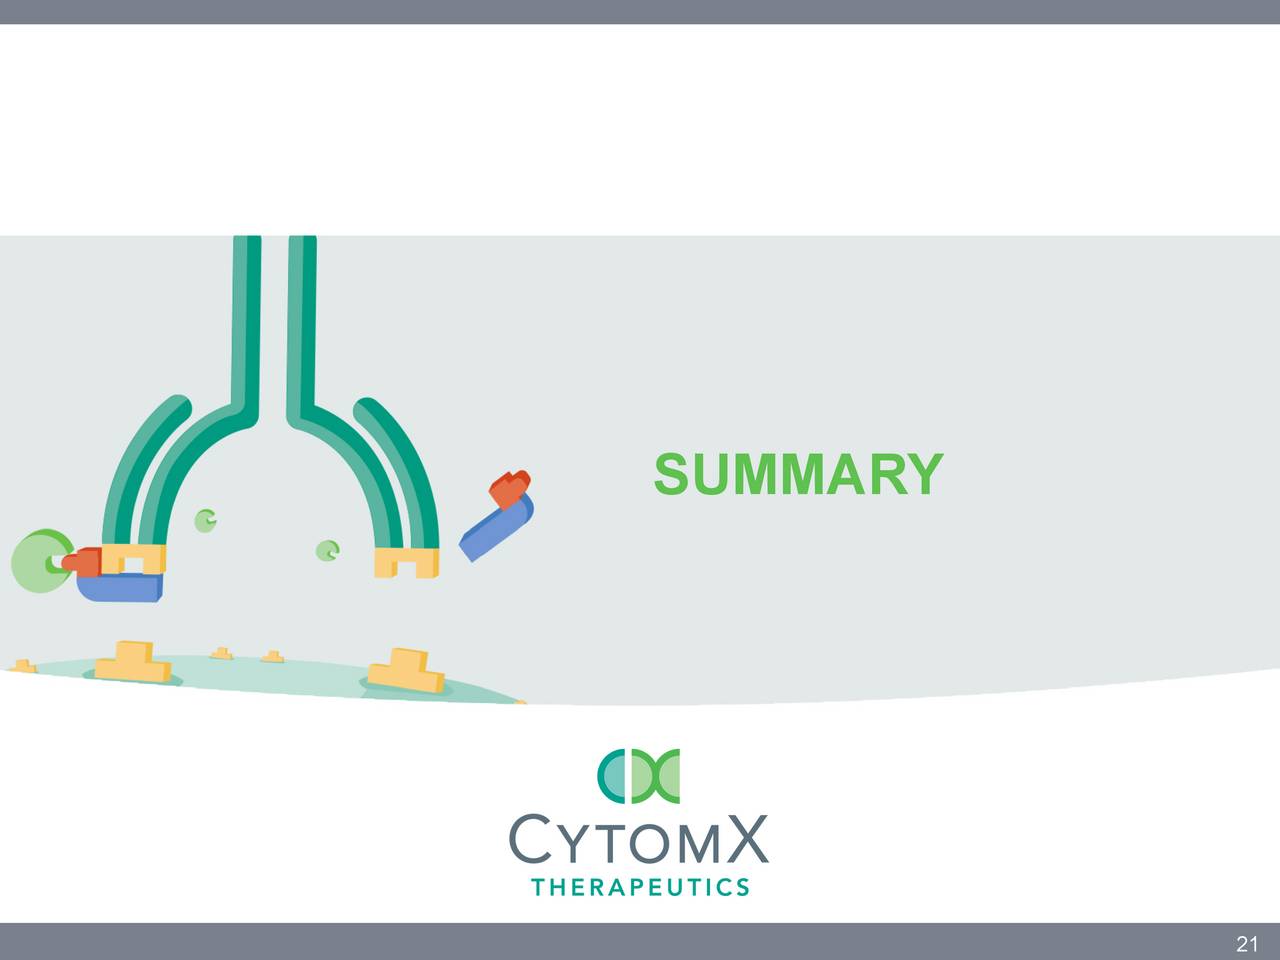 Cytomx